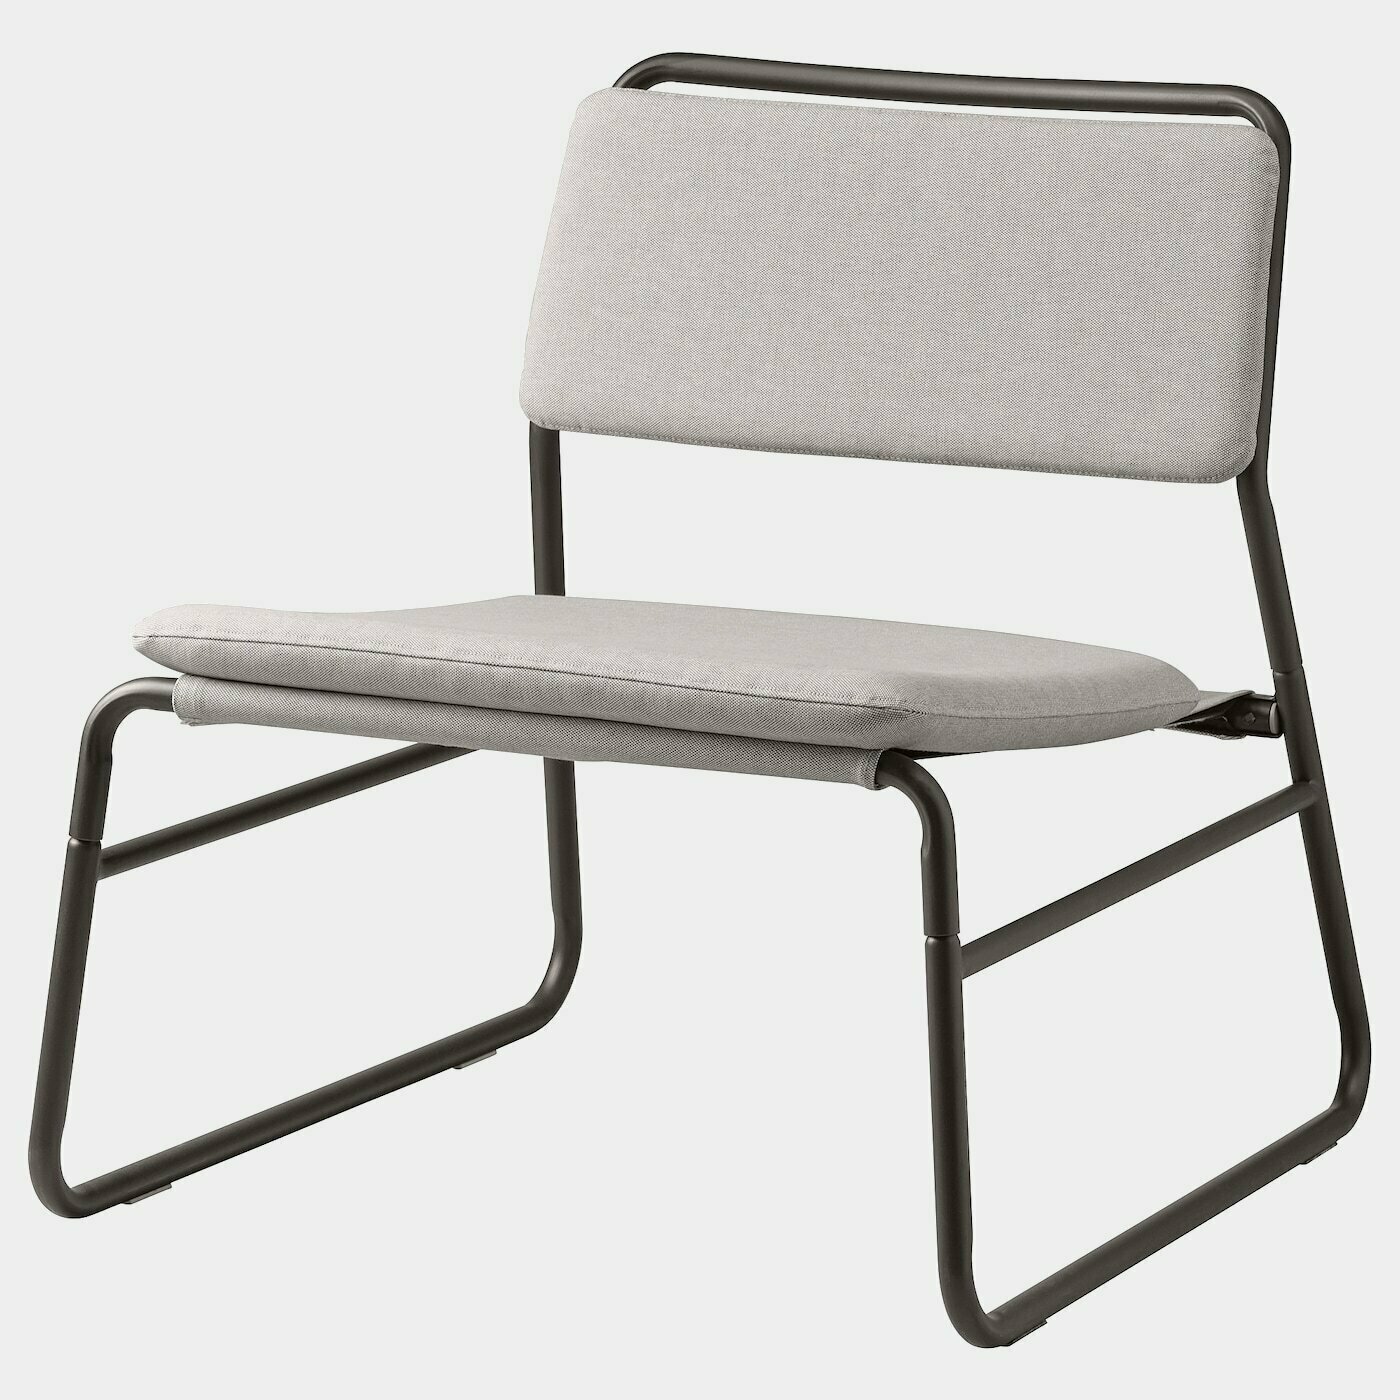 LINNEBÄCK Sessel  -  - Möbel Ideen für dein Zuhause von Home Trends. Möbel Trends von Social Media Influencer für dein Skandi Zuhause.